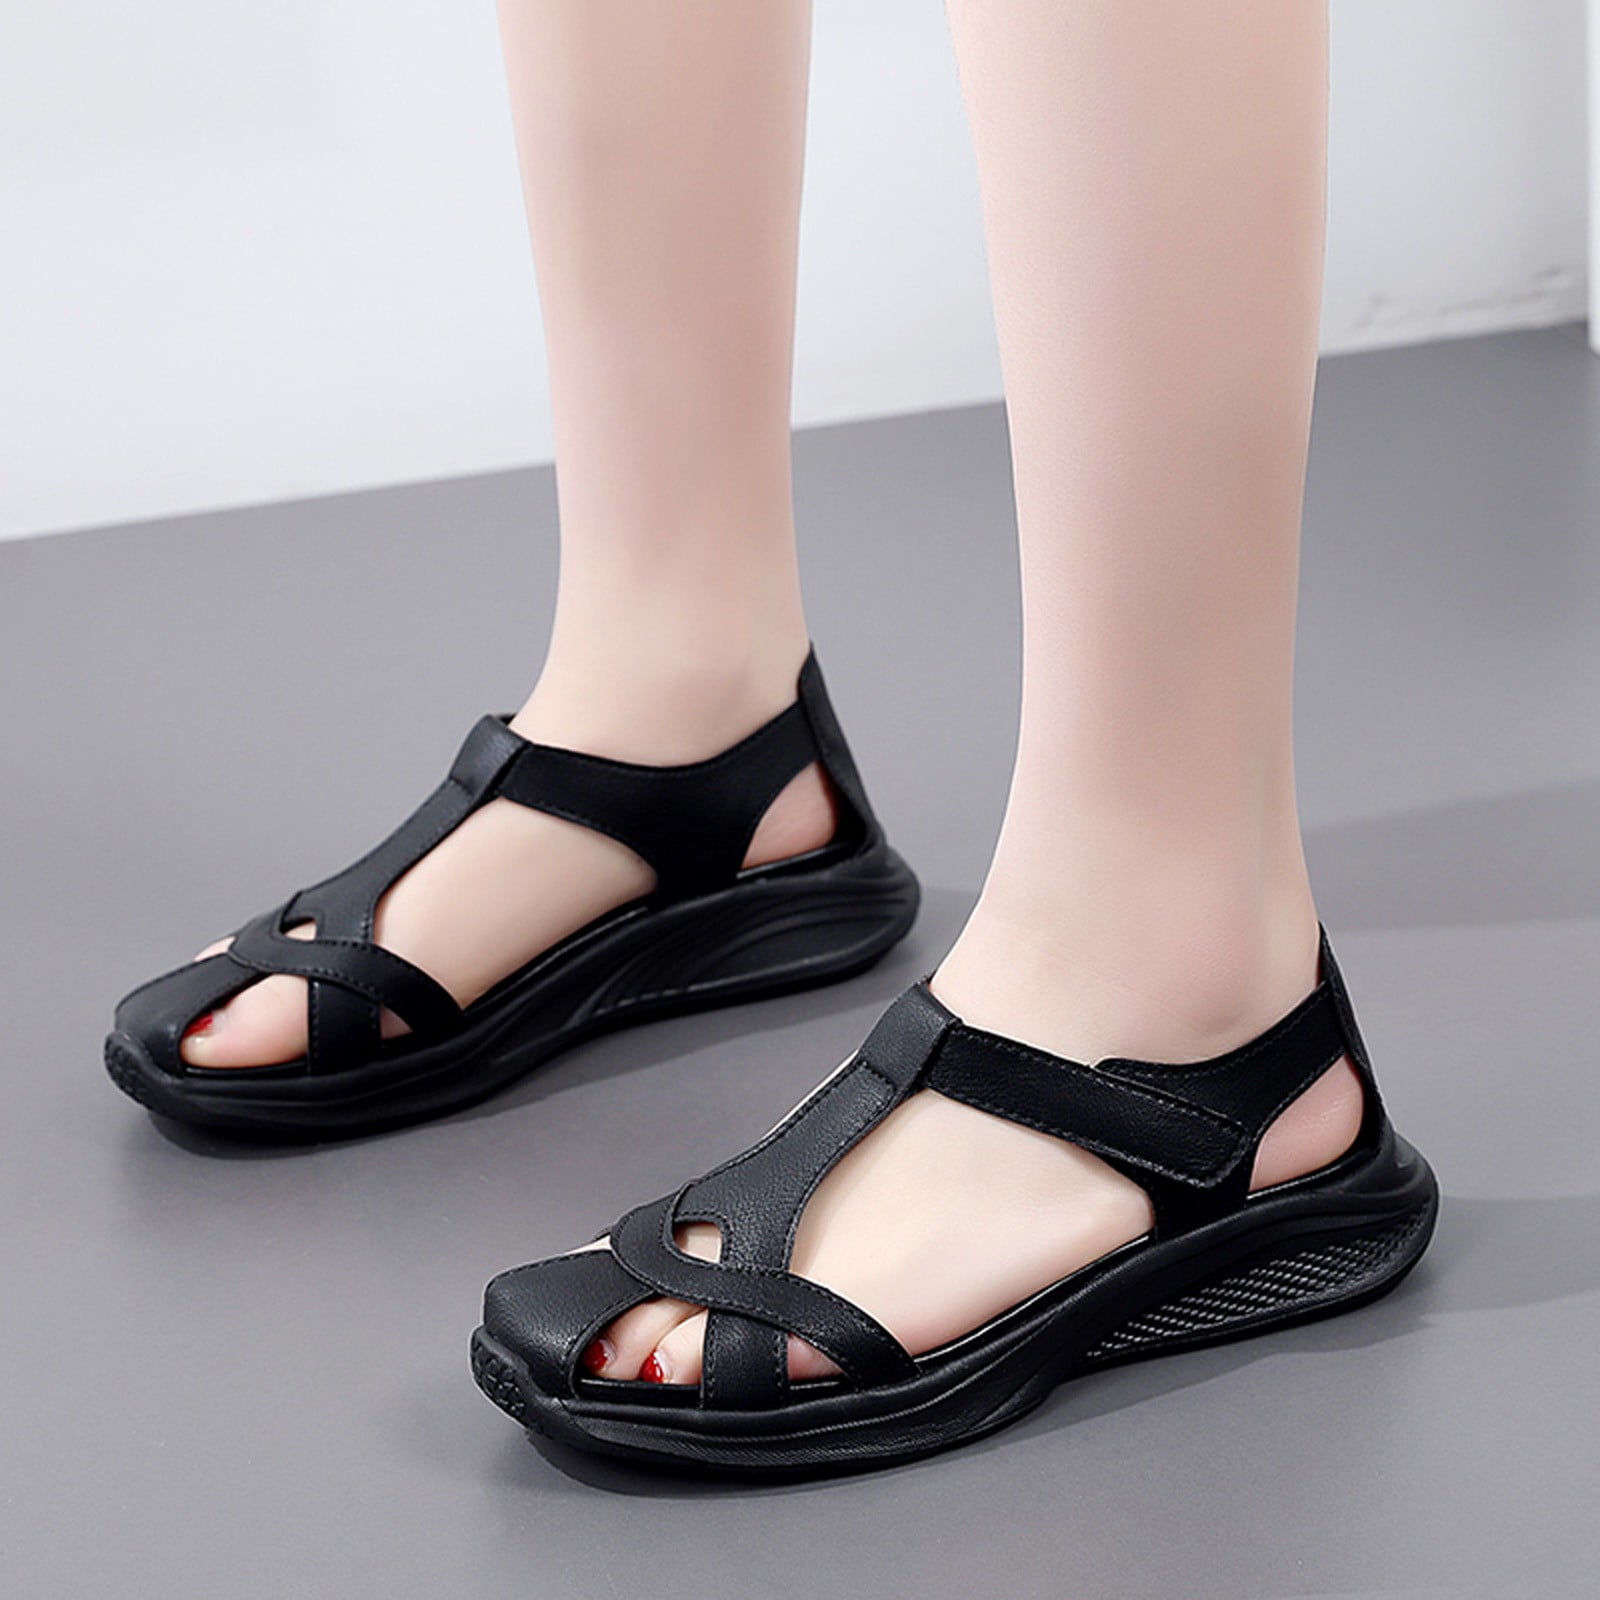 eczipvz Summer Sandals for Women,Women's Platform Sandals